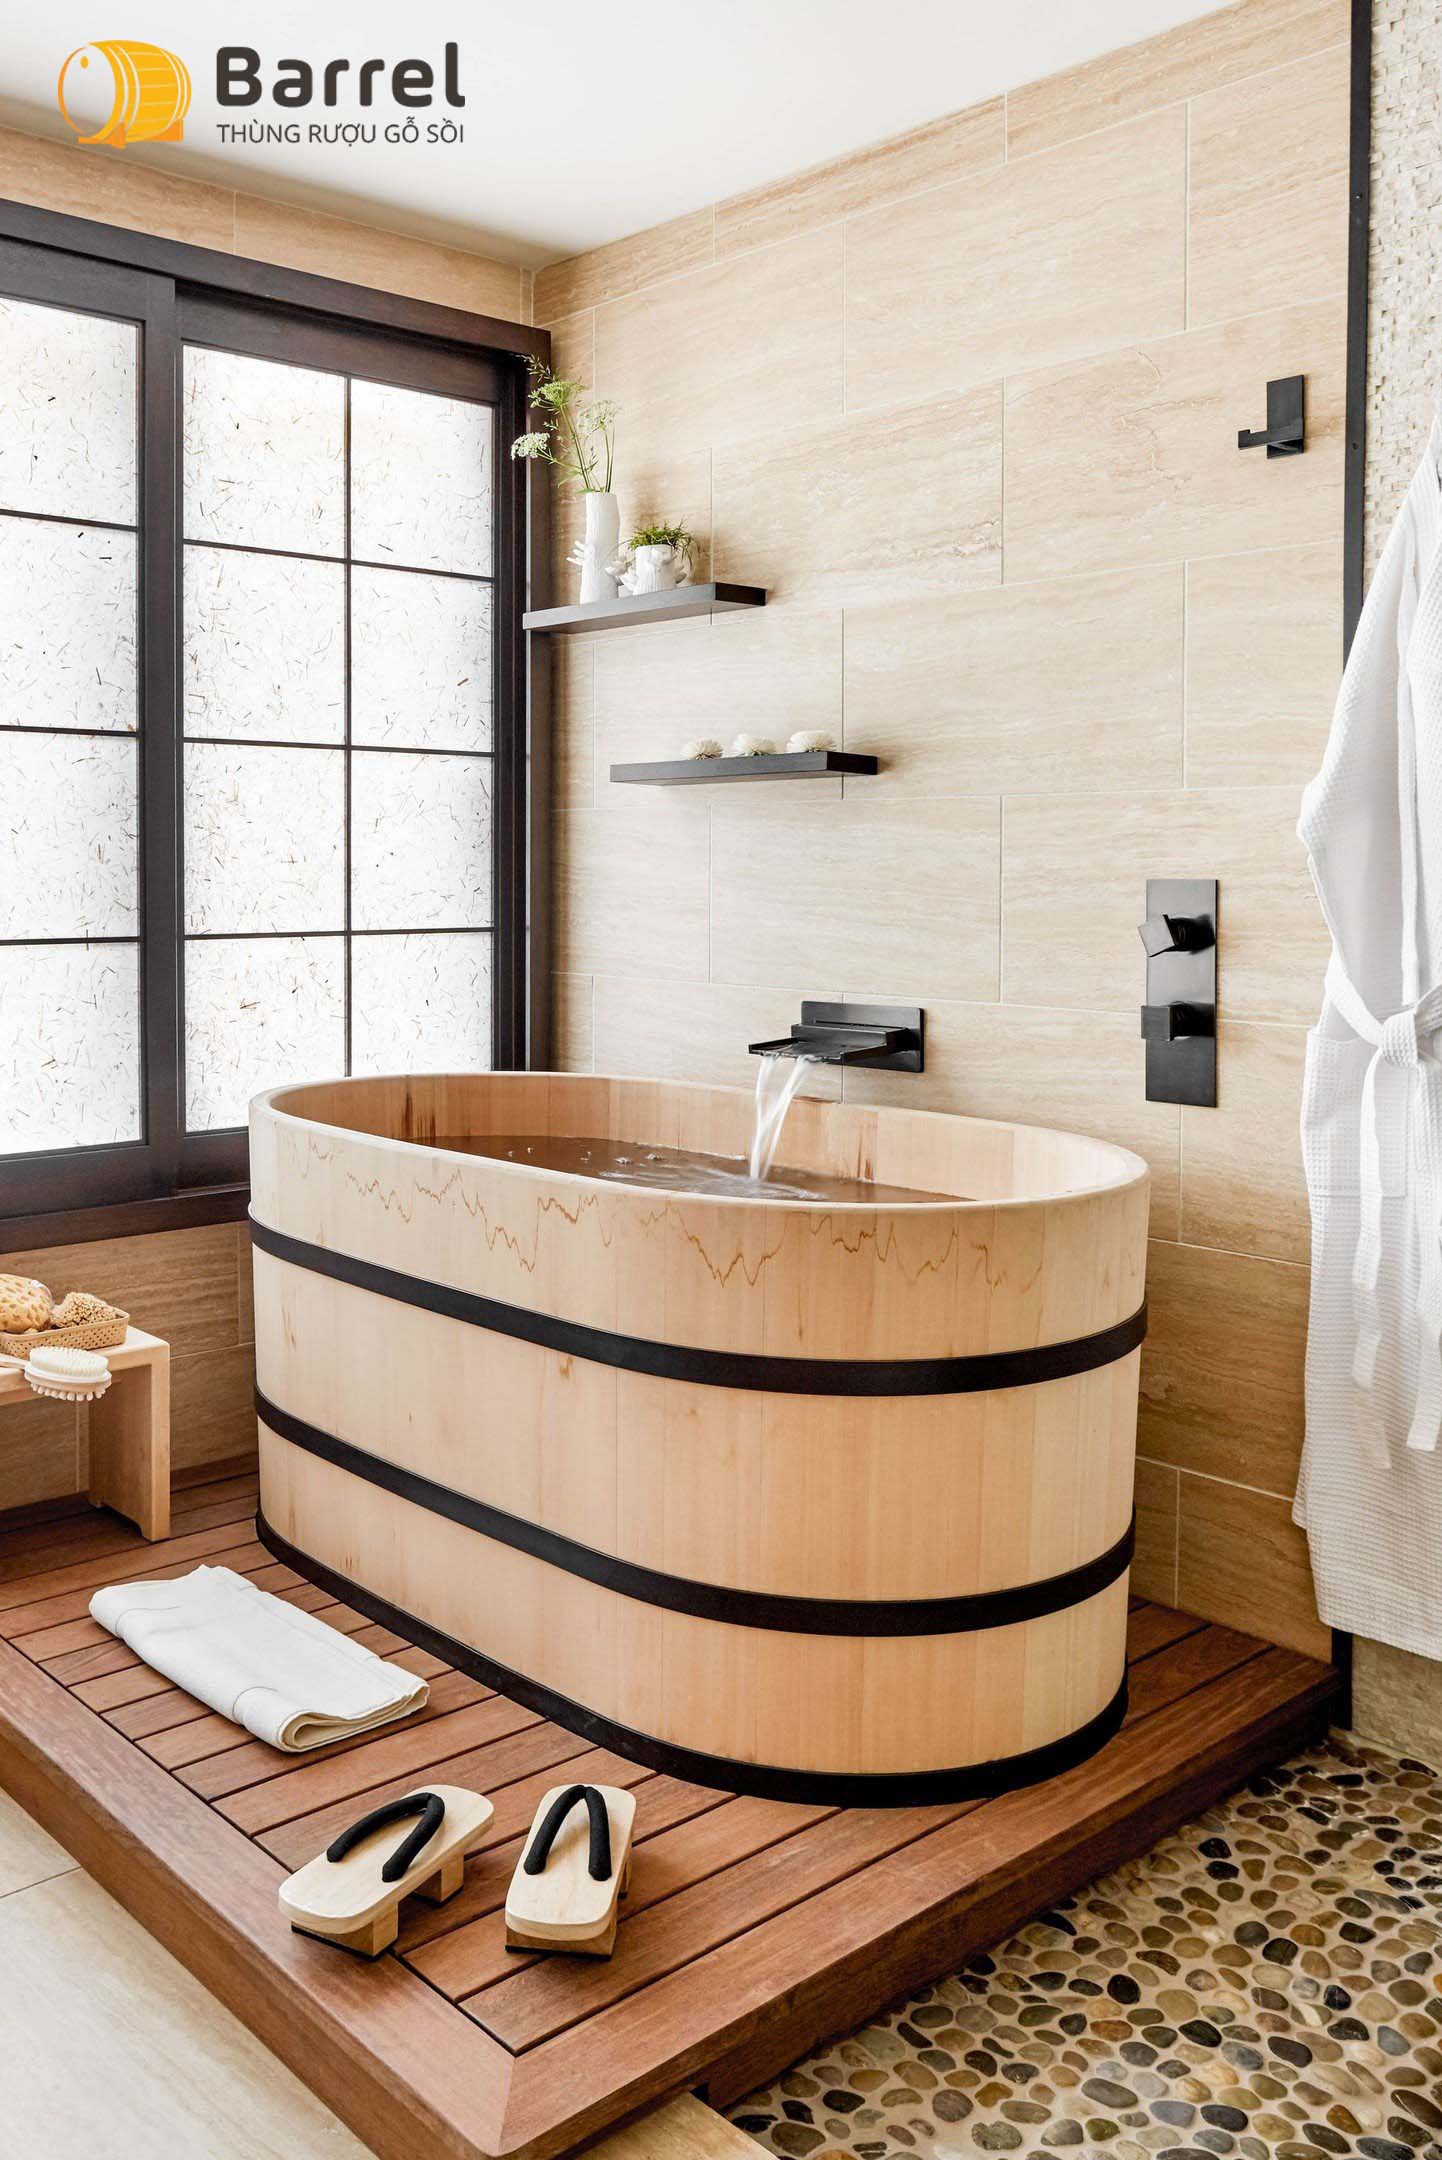 lợi ích khi sử dụng bồn tắm gỗ